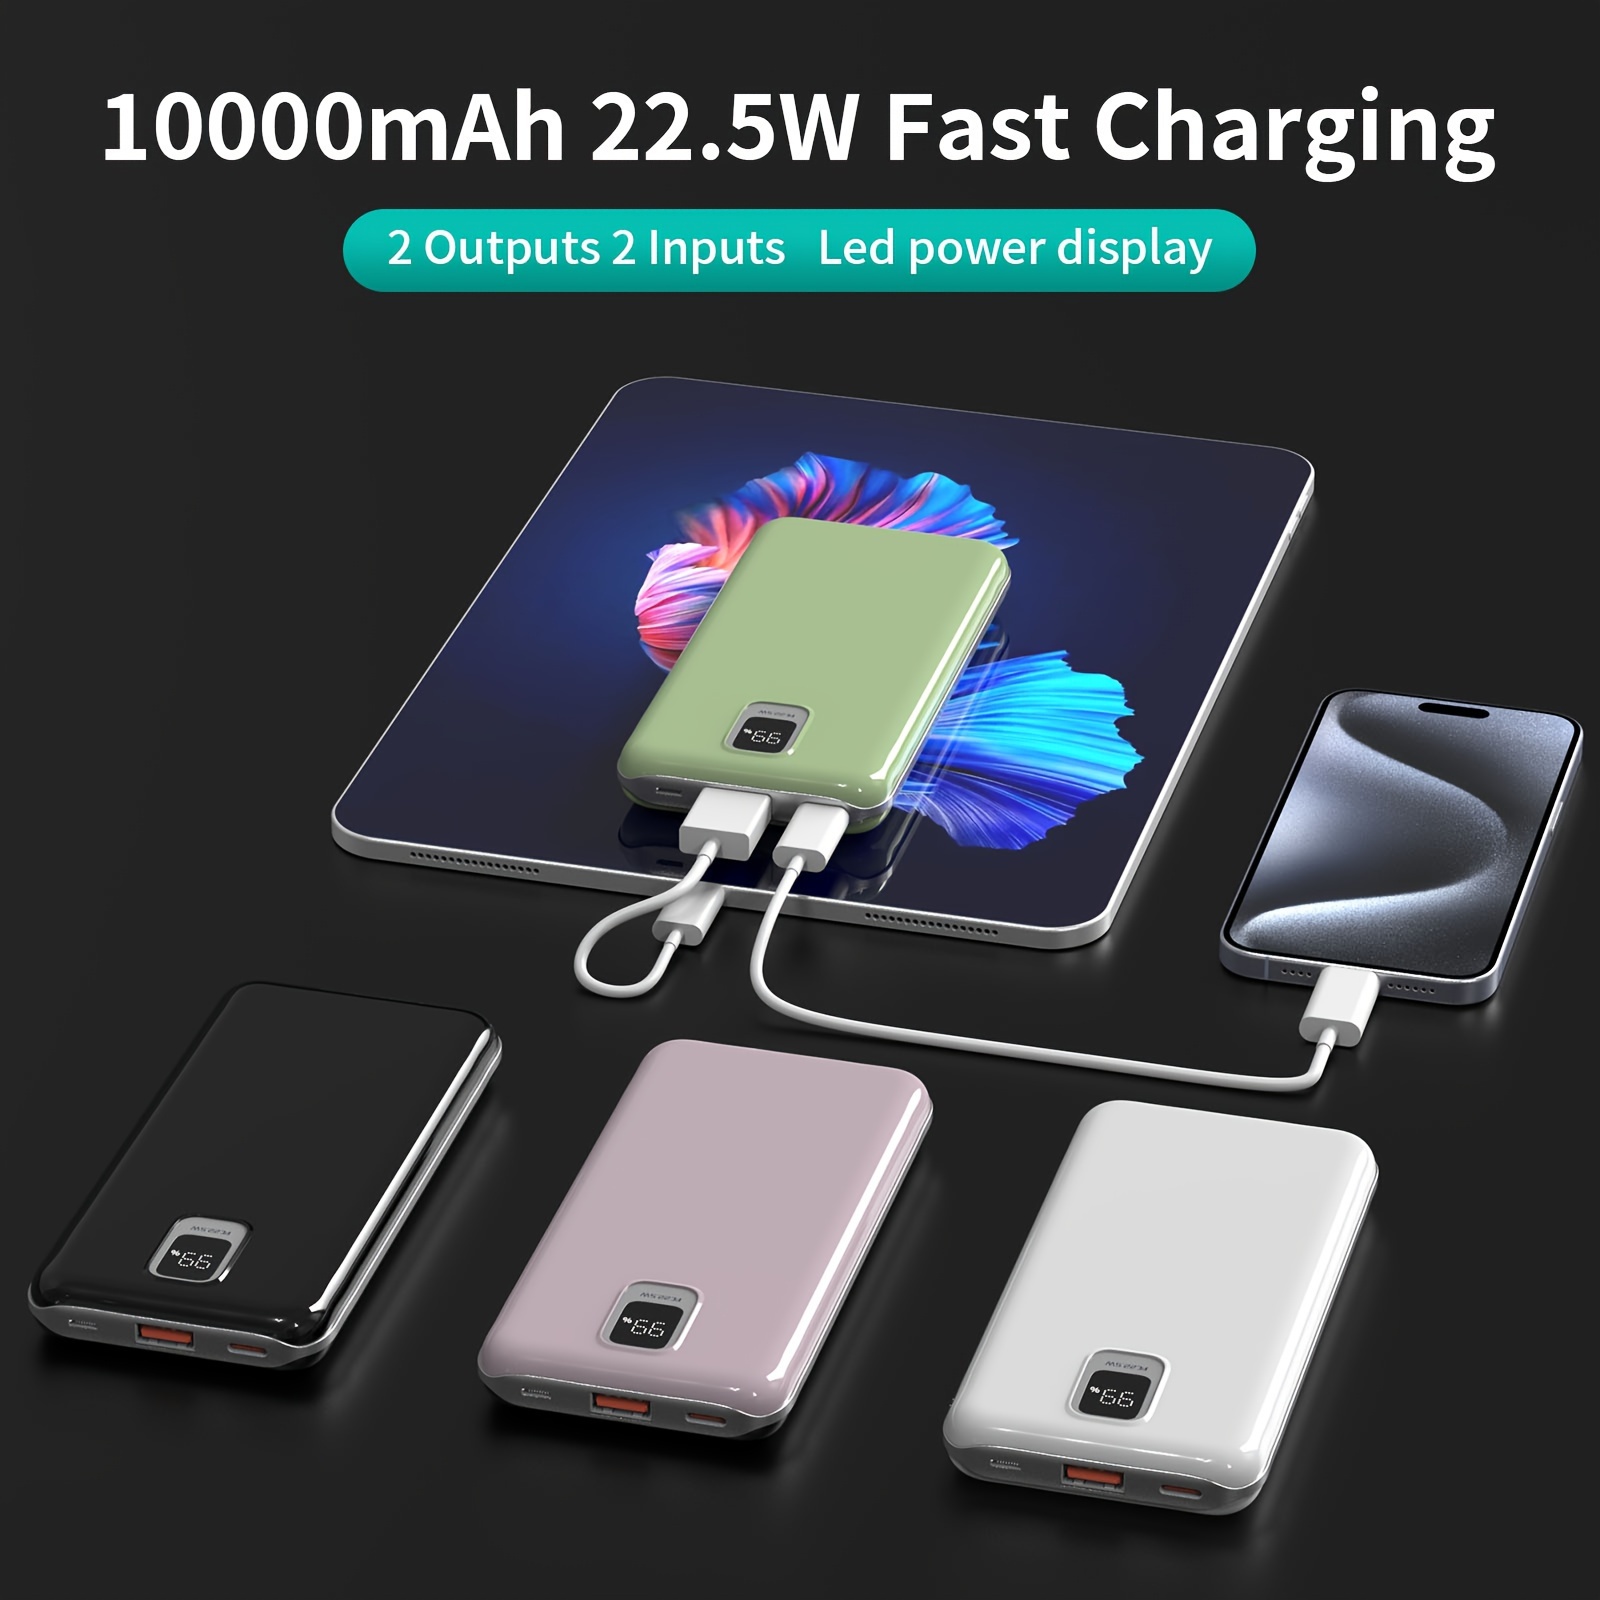  Power Bank 10000mAh, cargador portátil de carga ultracompacto  de alta velocidad, batería externa más pequeña y ligera, compatible con  iPhone 12 11 X Samsung S10, Google, LG, iPad y más, color